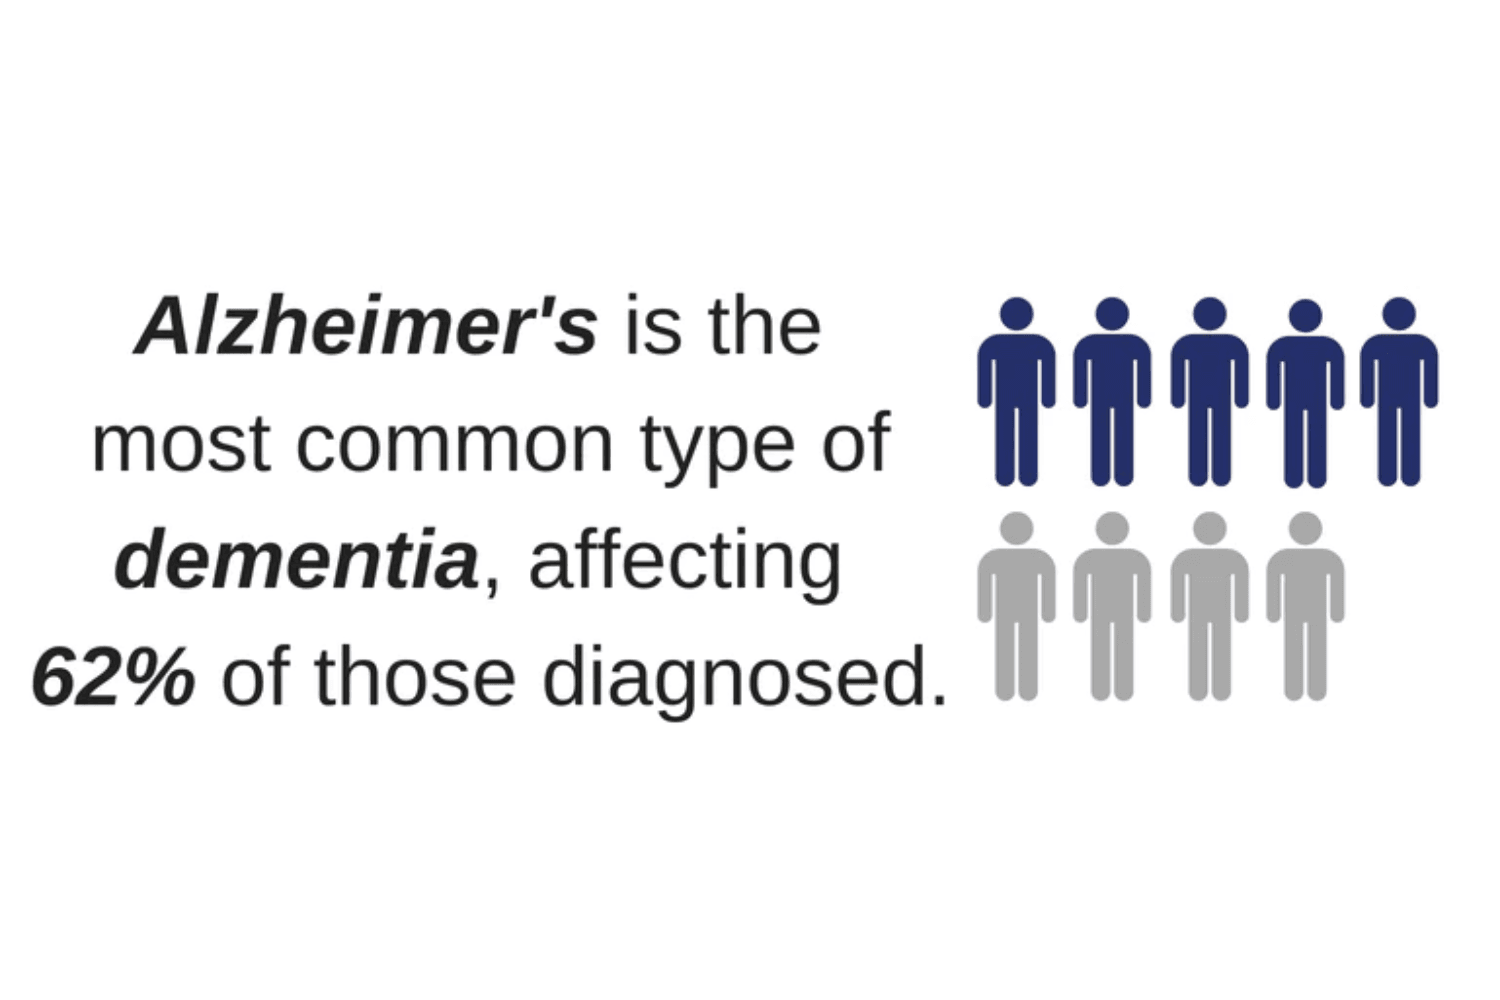 A fact on Alzheimer's